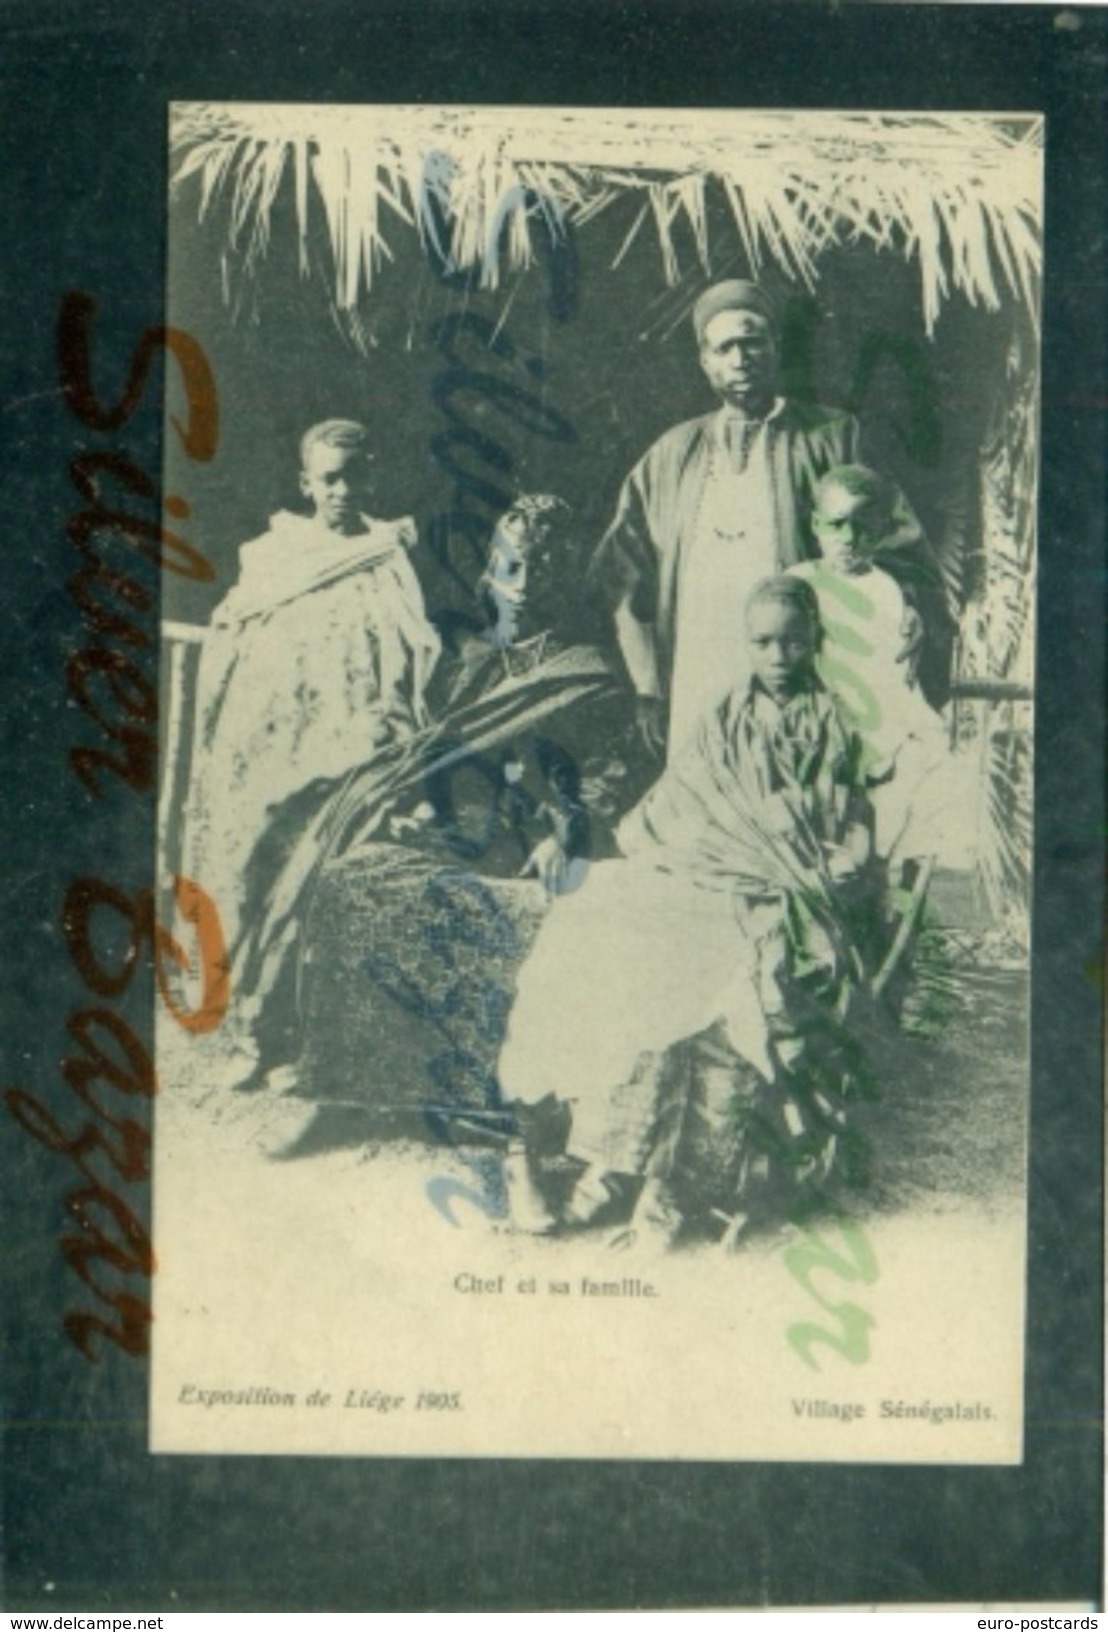 VILLAGE SENEGALAIS - EXPOSITION DE LIEGE 1905 - Senegal